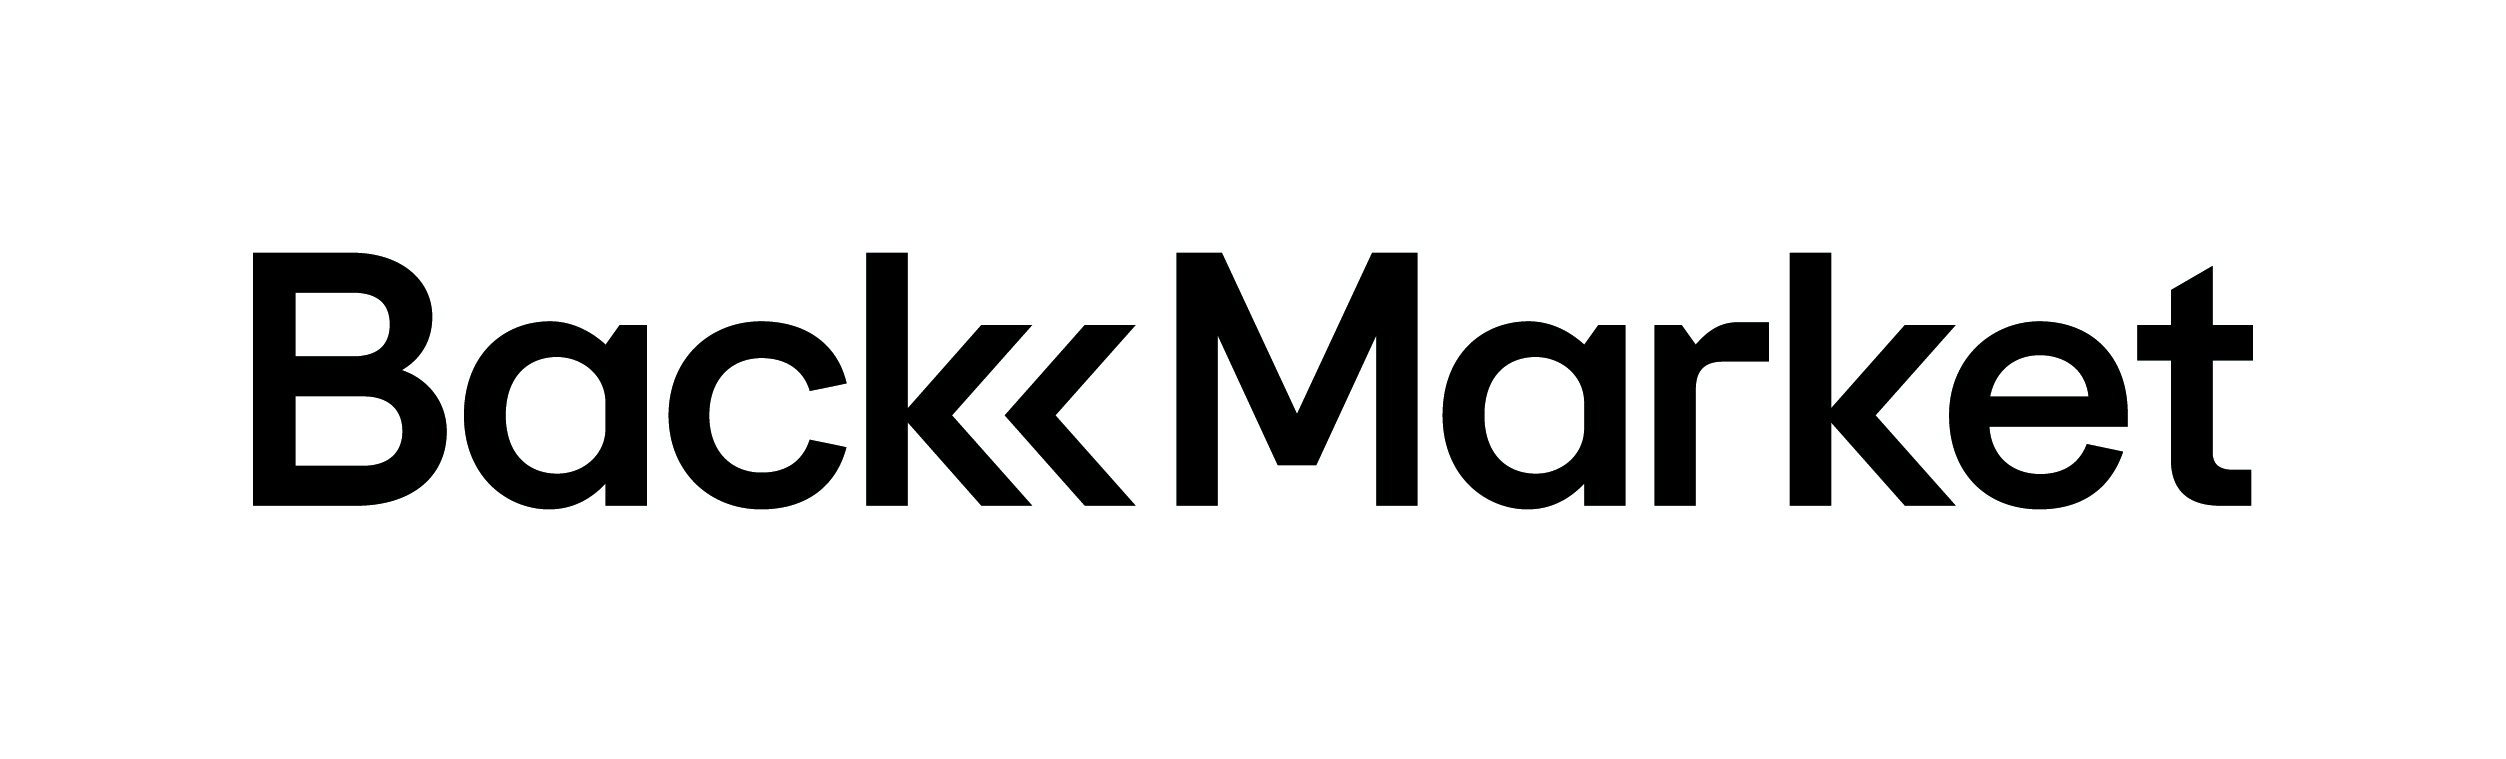 Backmarket_Horizontal_Logo_Black_CMYK.jpg